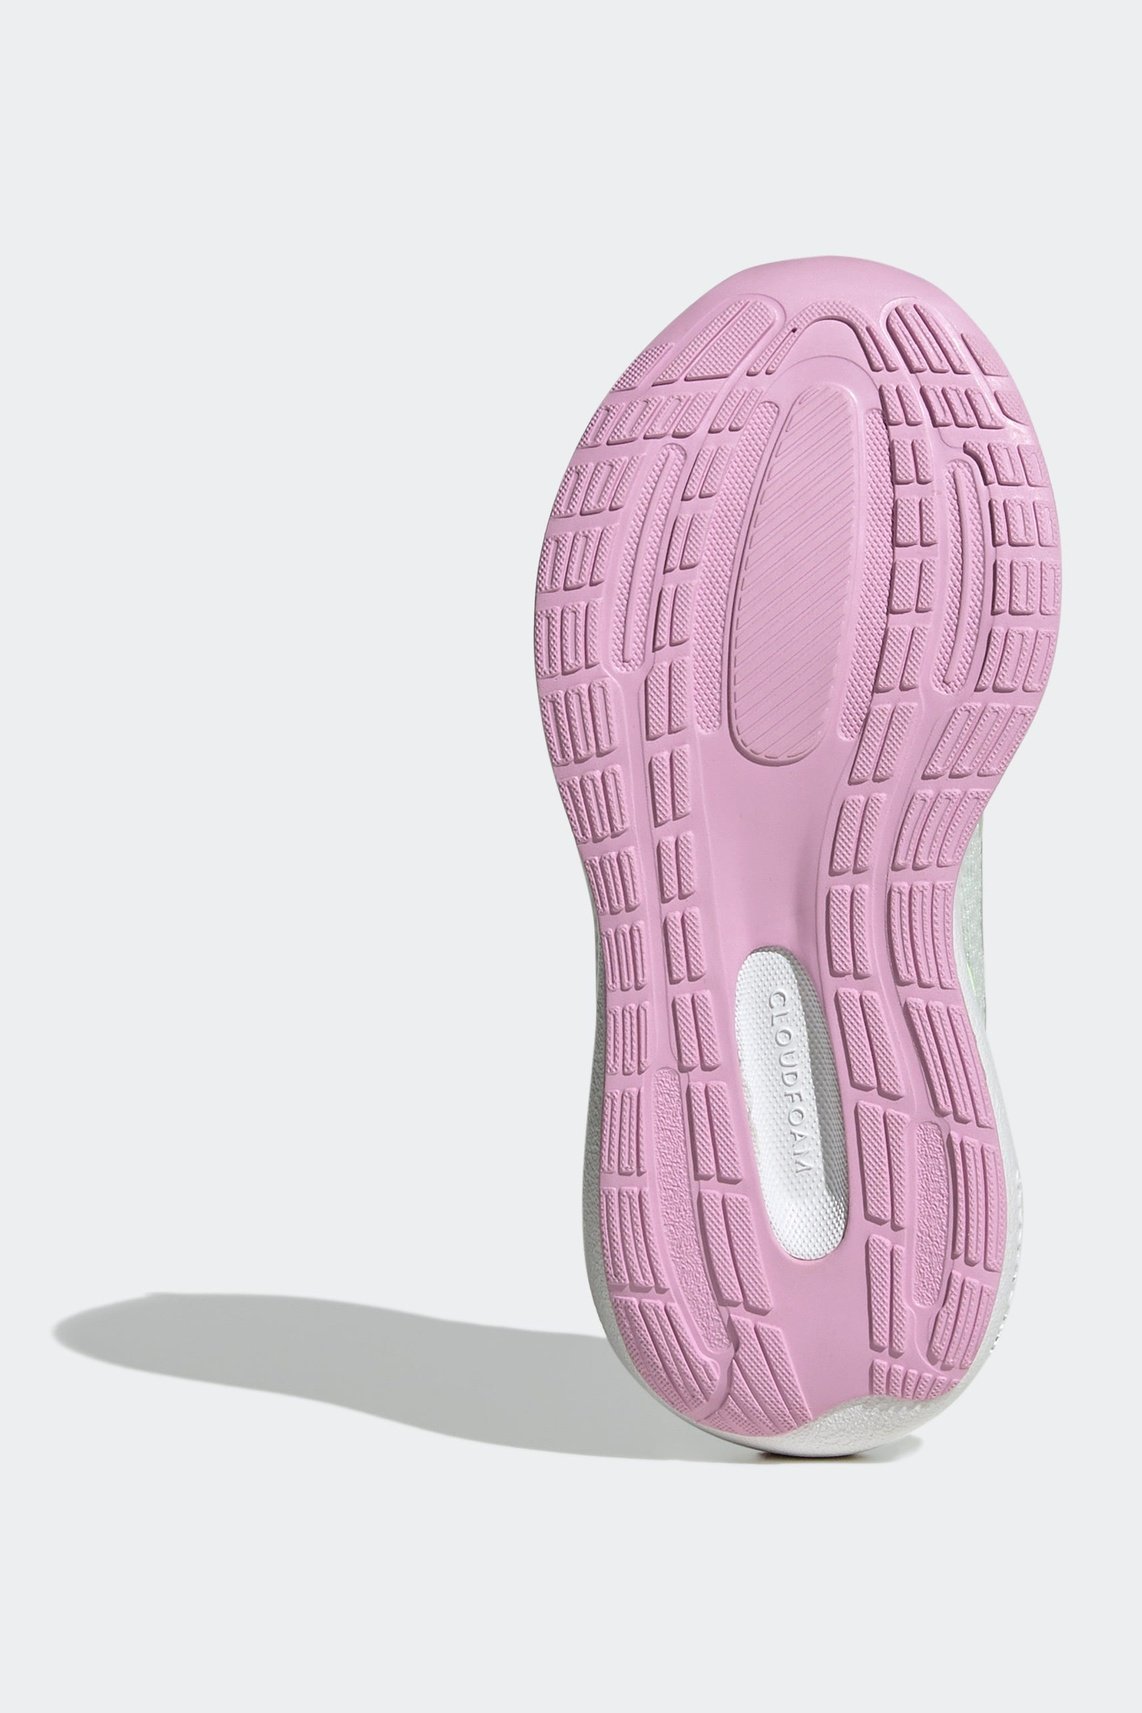 נעלי ספורט לילדים Runfalcon 3.0 בצבע אפור ורוד וצהוב זוהר